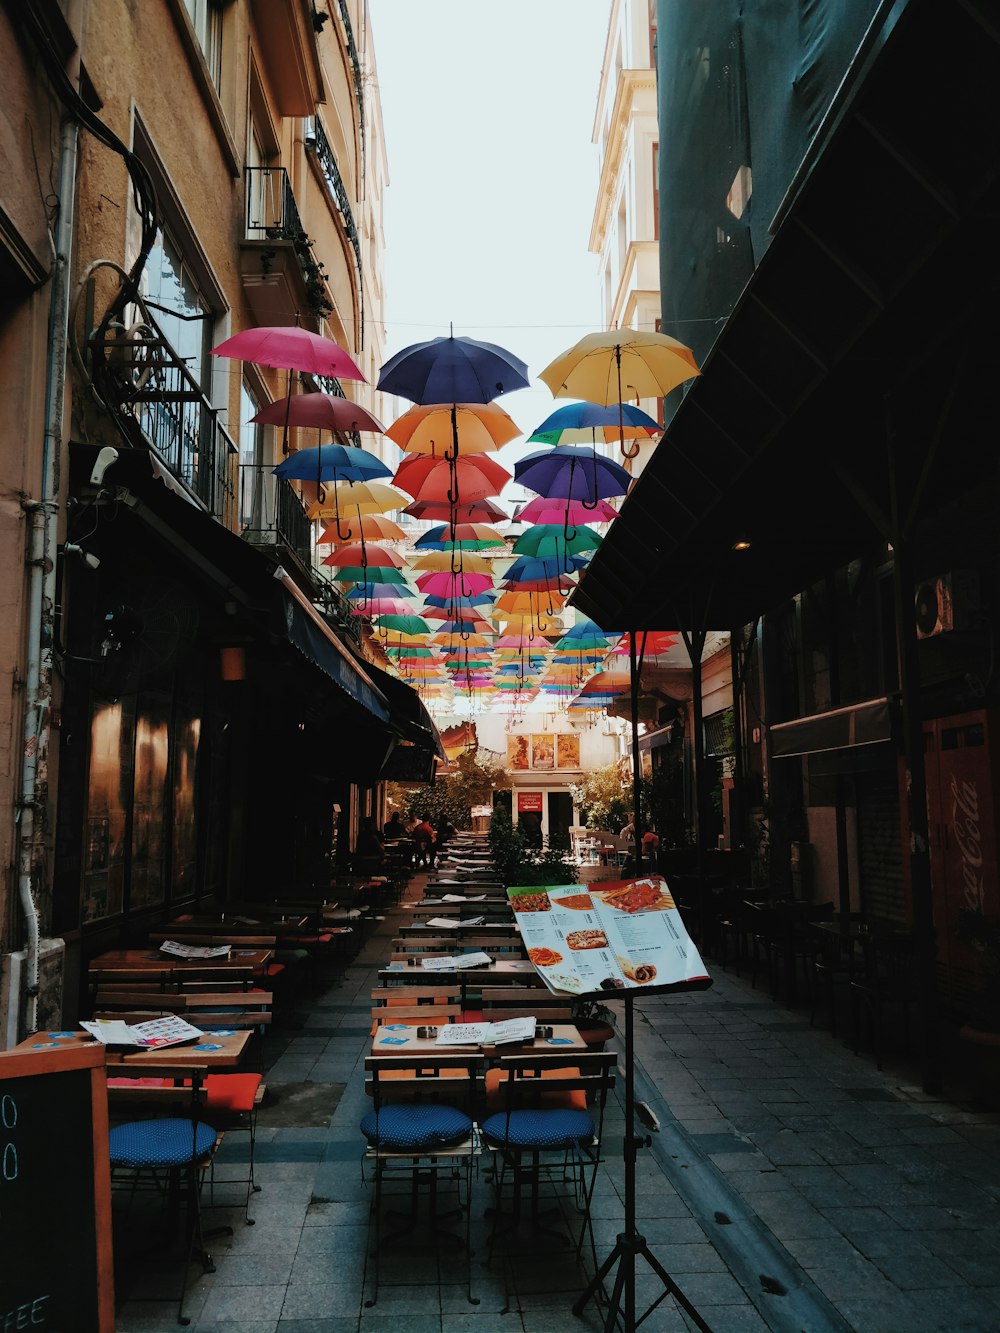 floating umbrellas during daytime